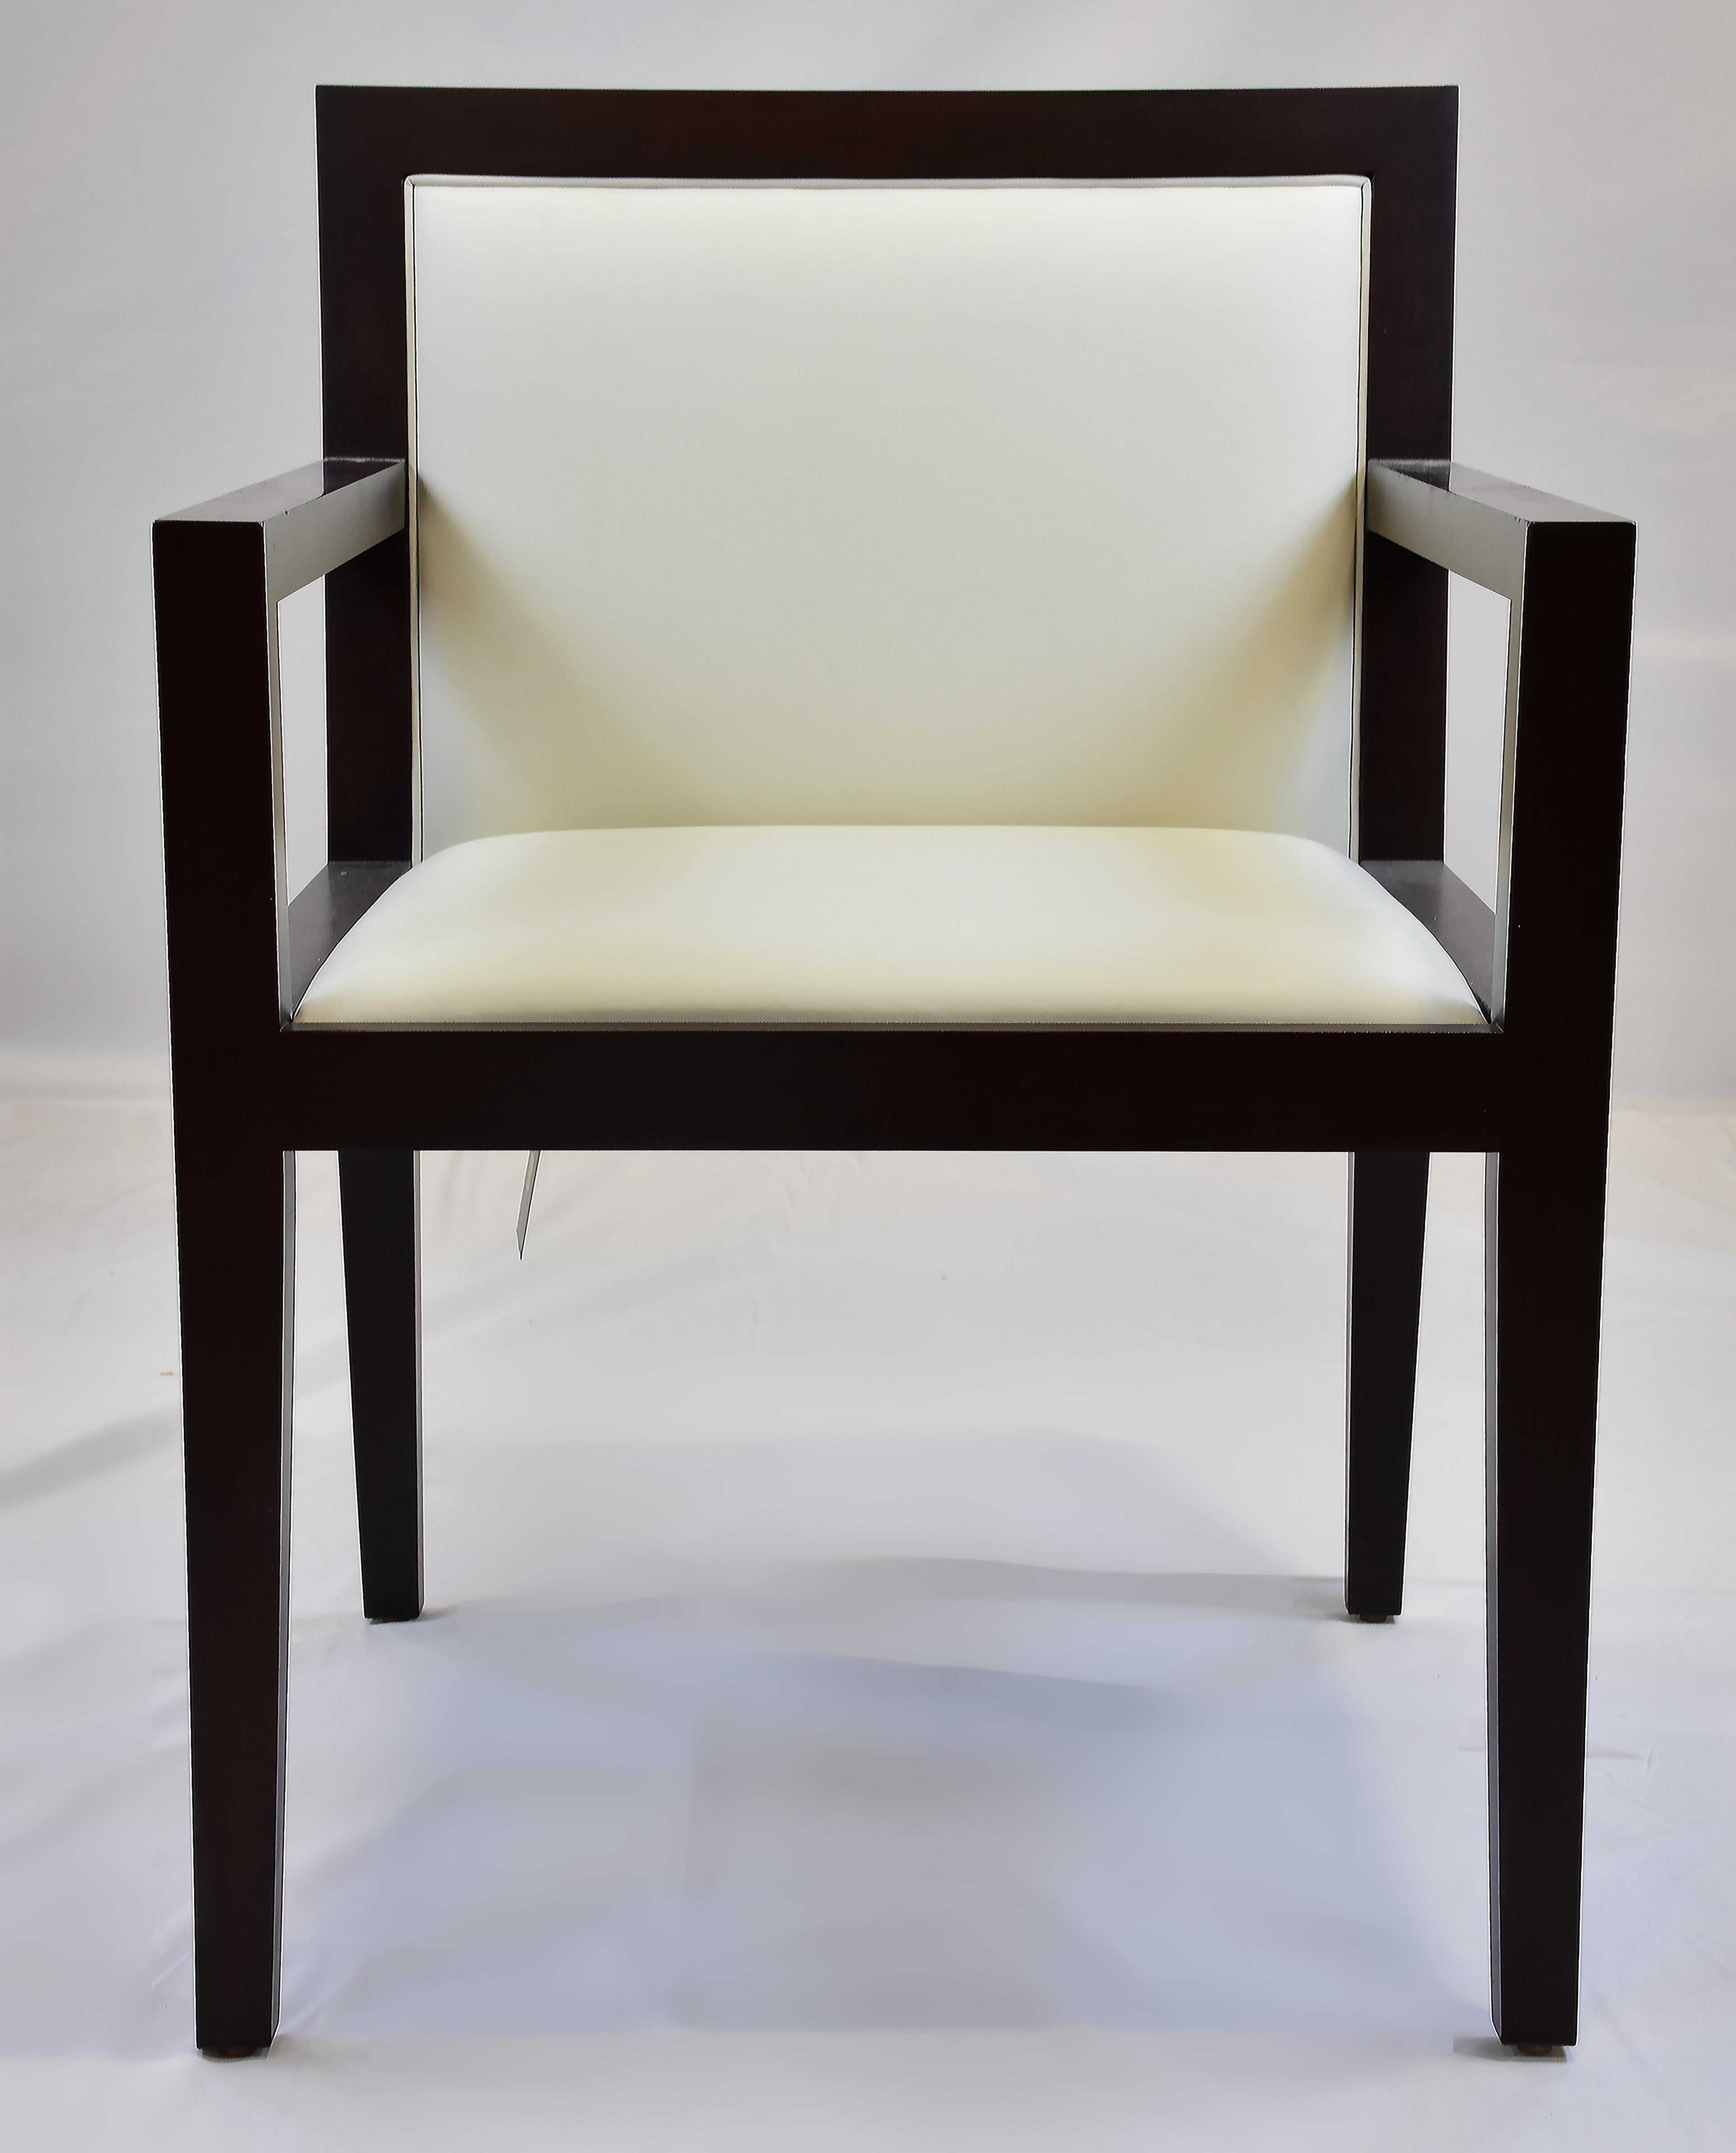 Le Jeune-Polsterung SLJ1 Esstisch-/Schreibtischsessel, Showroom-Modell

Zum Verkauf angeboten wird ein Le Jeune Upholstery Showroom-Modell SLJ1	DC5.923	Esszimmer-Sessel. Dies ist ein moderner Schreibtischstuhl mit Holzarmlehne und einer dünnen